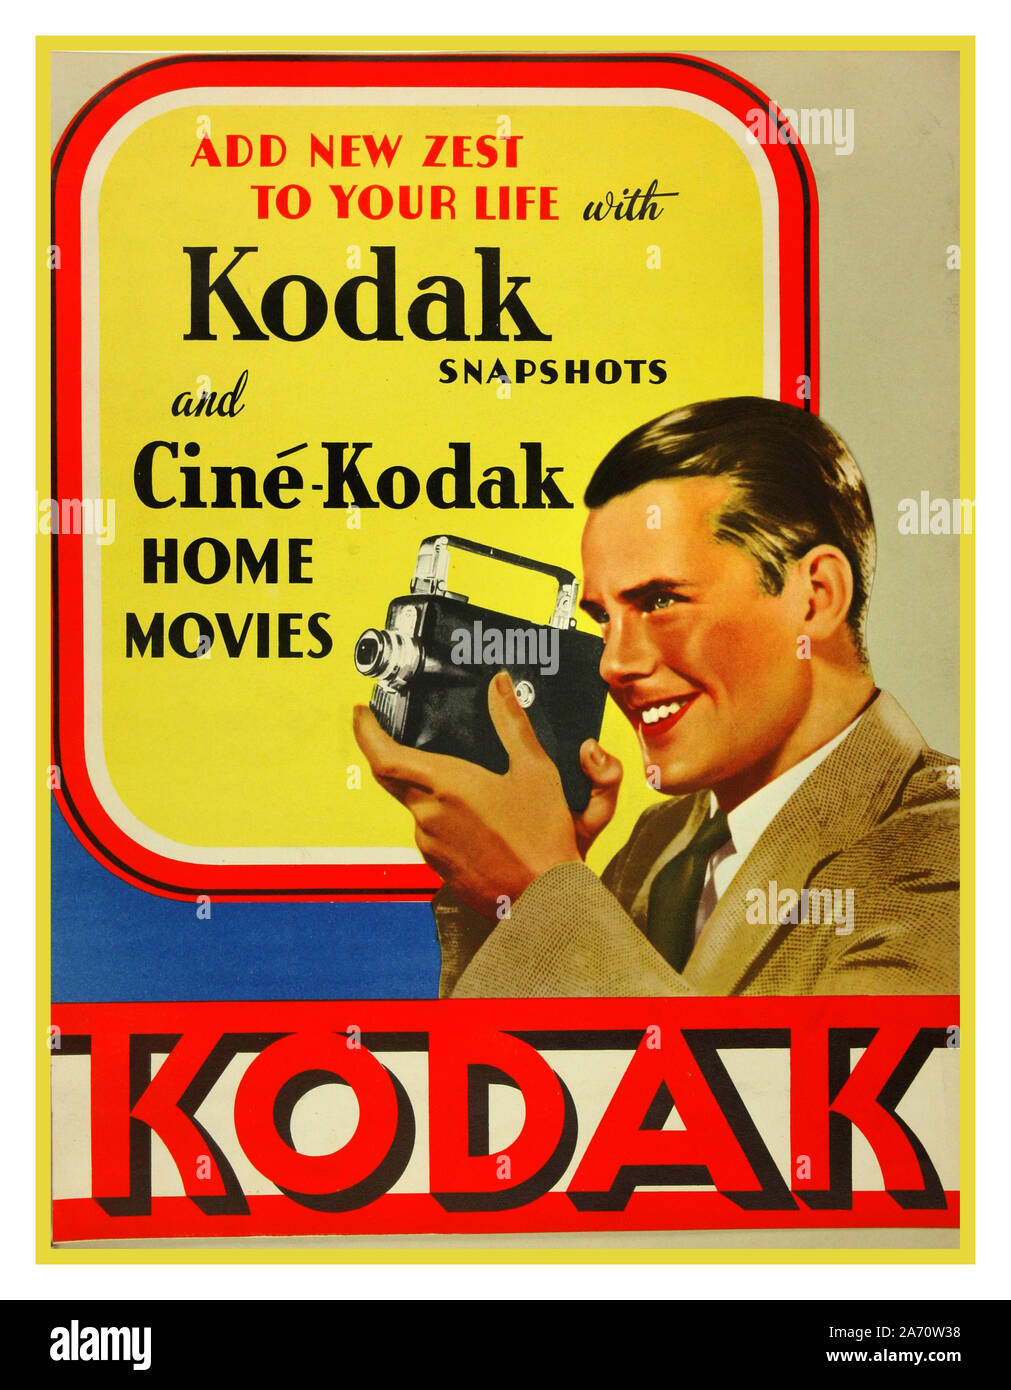 Historique KODAK 1920 accueil les films Kodak Film ciné rétro vintage des années 1900, affiche publicitaire pour Ciné-Kodak légendaire 8mm accueil les films et photos Kodak 'ajouter un nouvel élan à votre vie' Banque D'Images